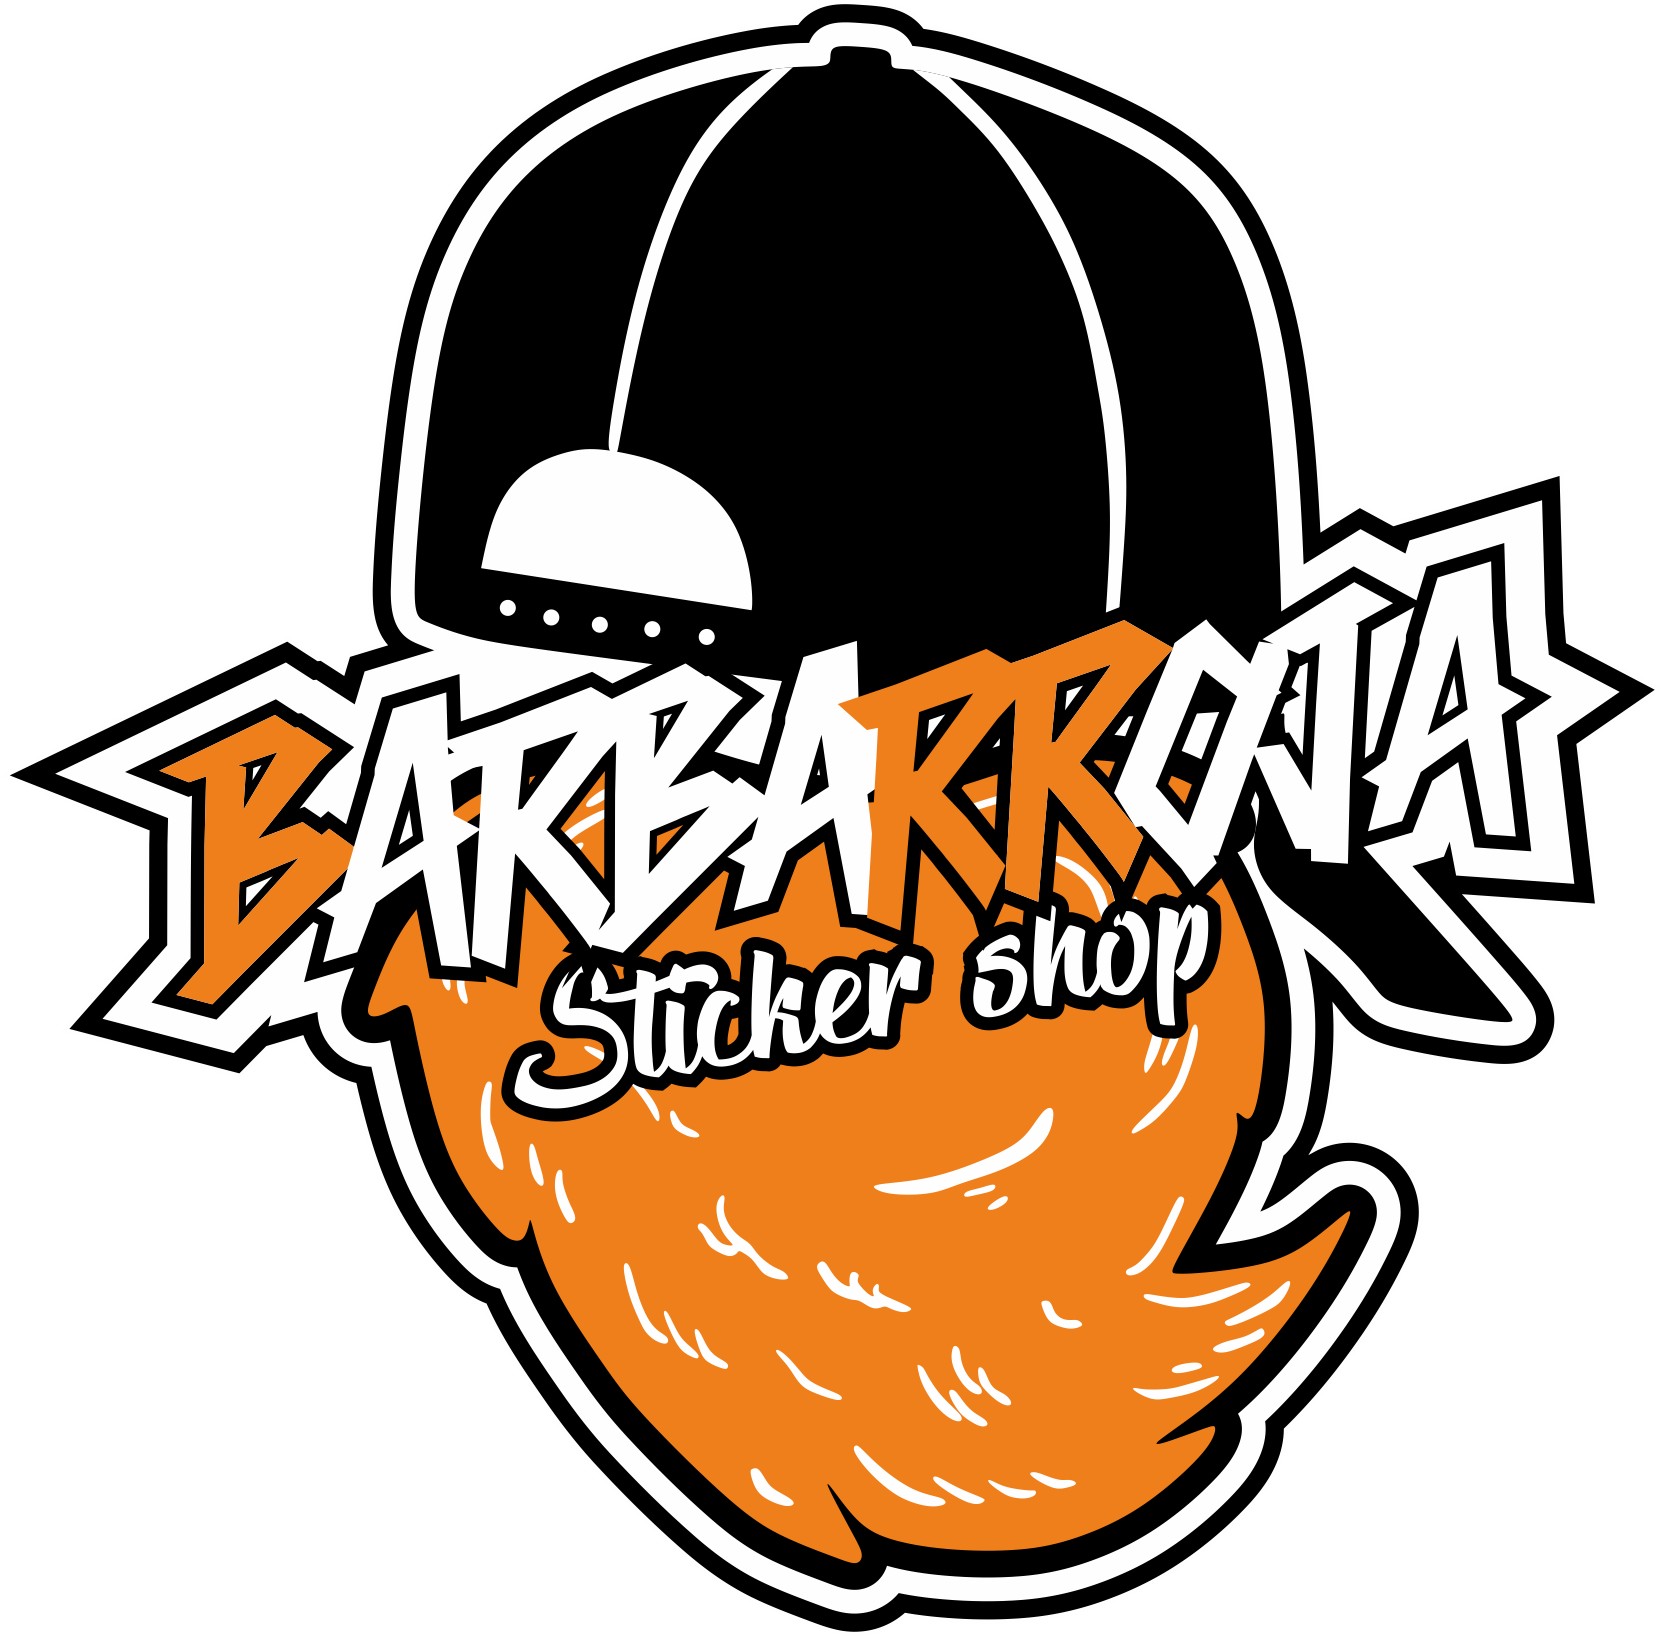 Barbarroja Stcker Shop